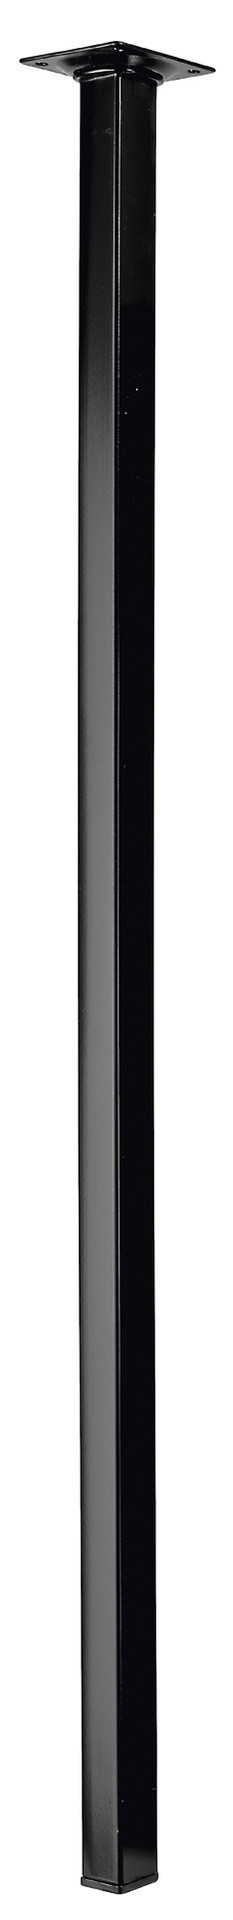 Pied de table carré fixe acier époxy noir, 80 cm